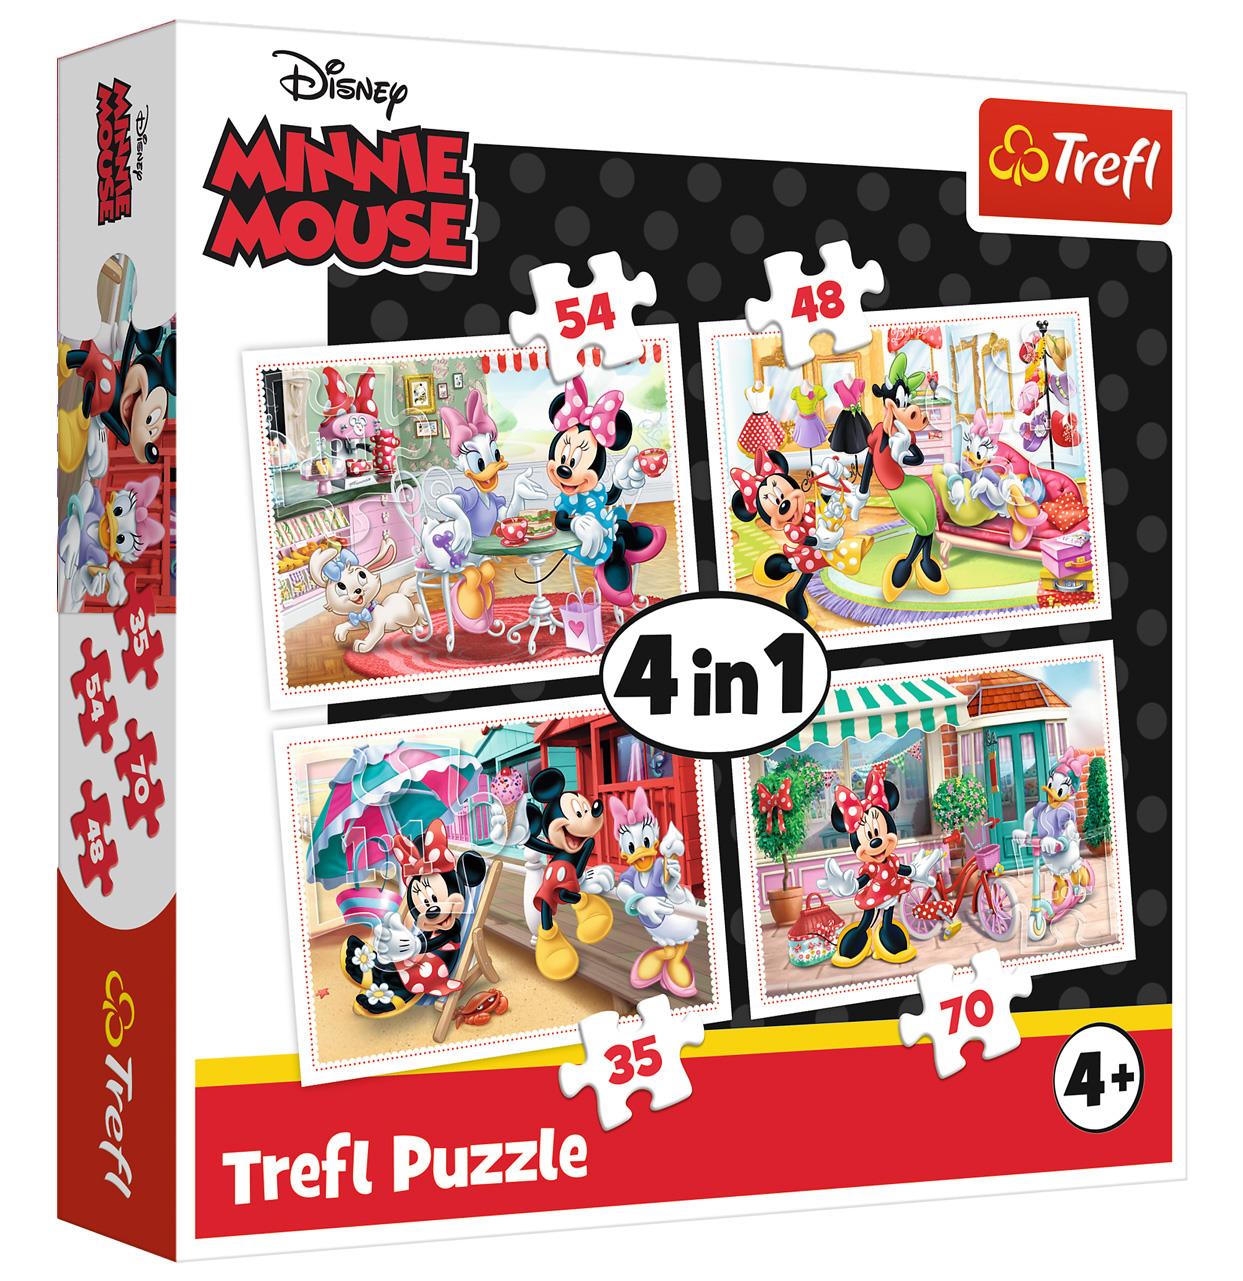 Trefl Çocuk Puzzle 34315 Minnie with Friends / Disney Minnie 35+48+54+70 Parça 4 in 1 Puzzle